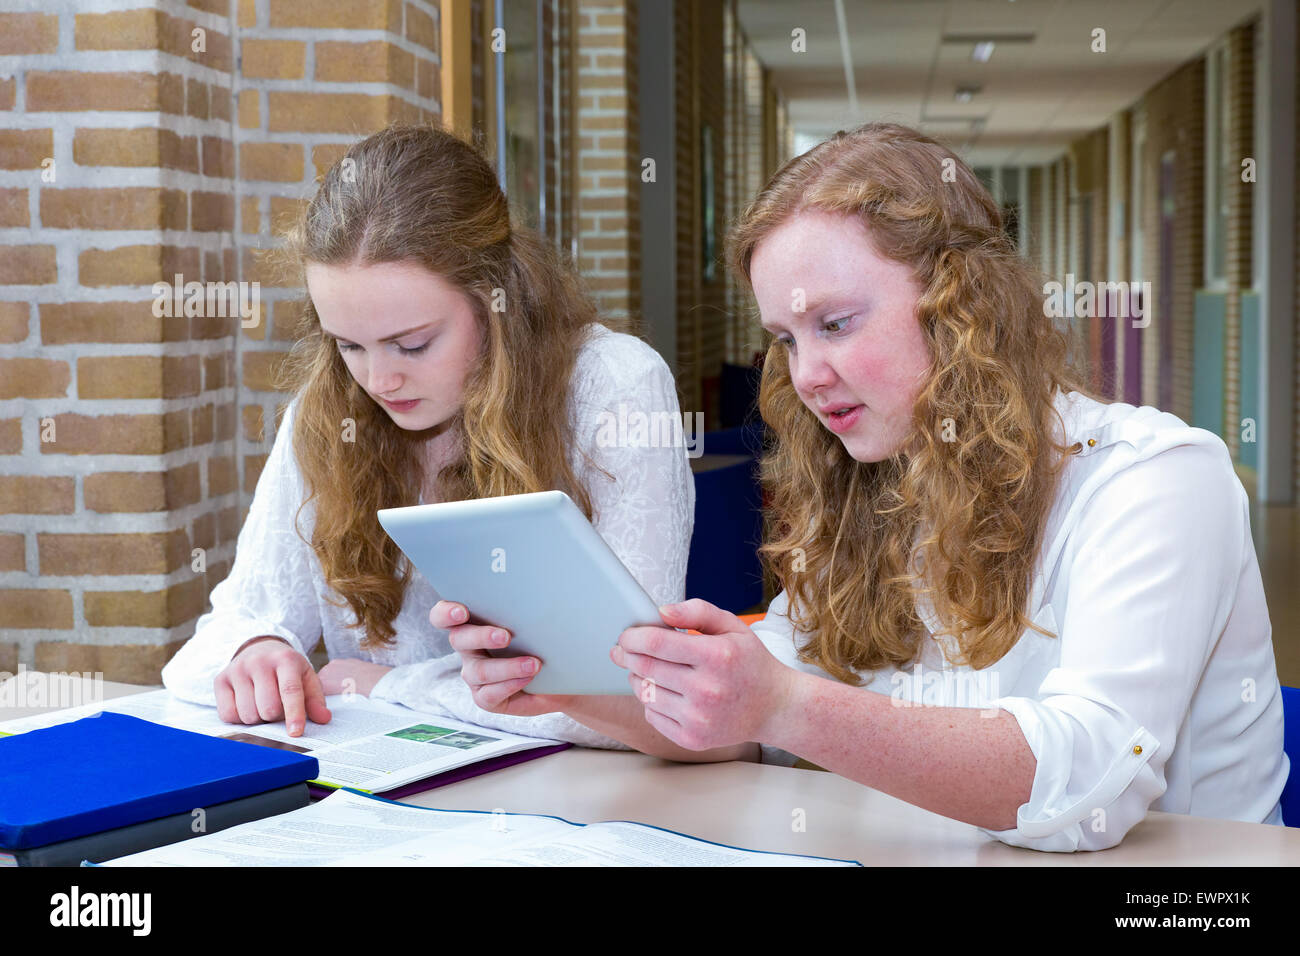 Zwei kaukasischen Teenager Freunde studieren in langen Flur des Schulgebäudes Stockfoto